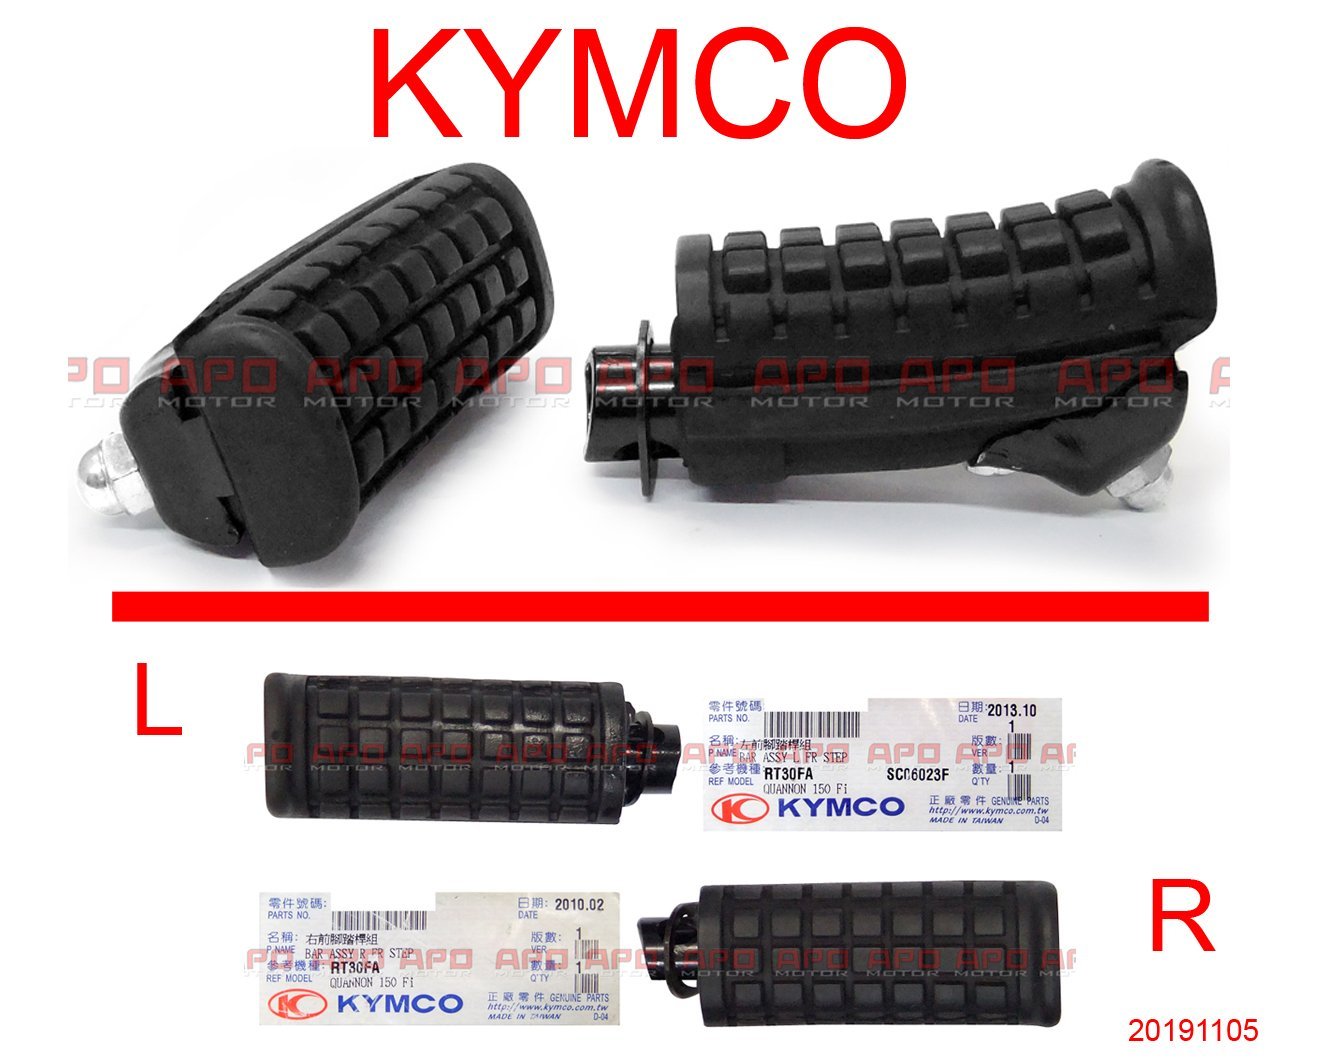 APO~F4-15-D~KYMCO原廠部品/酷龍腳踏桿/酷龍前腳踏桿/酷龍仿賽車前腳踏桿/單支售價:NT$250